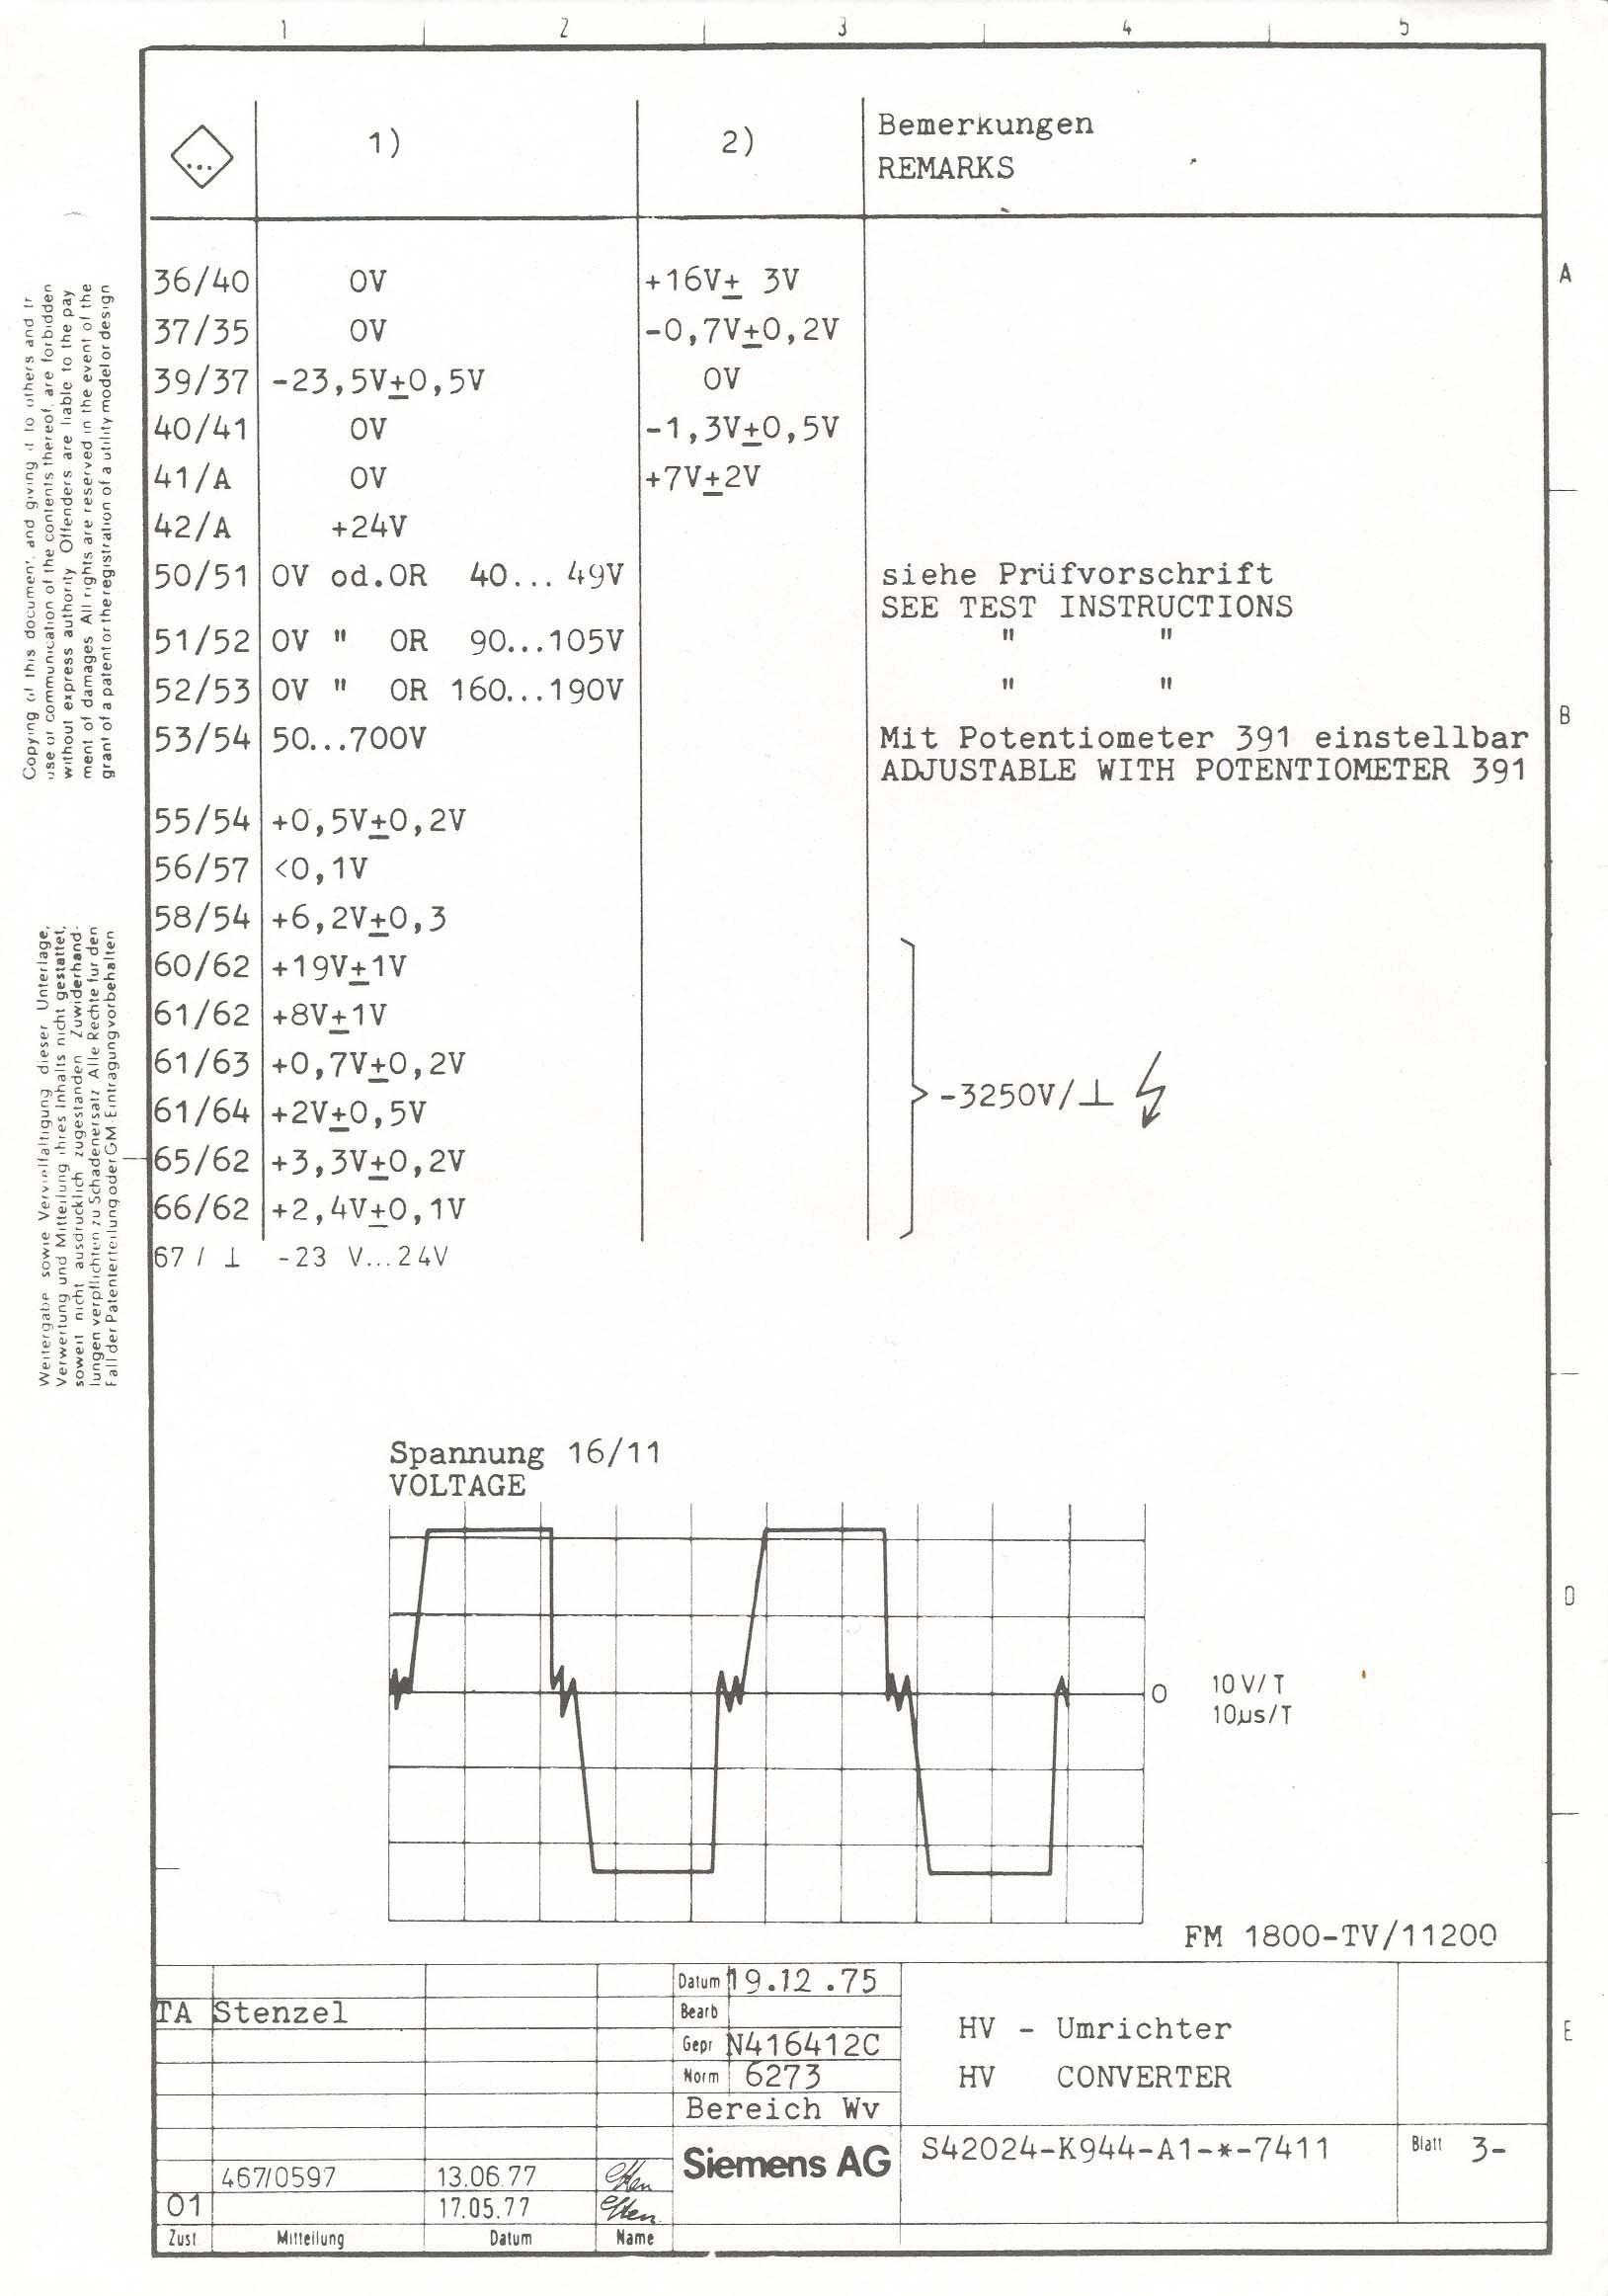 John Deere 4020 Starter Wiring Diagram 24v Starter Wiring Diagram Detailed Schematic Diagrams Of John Deere 4020 Starter Wiring Diagram